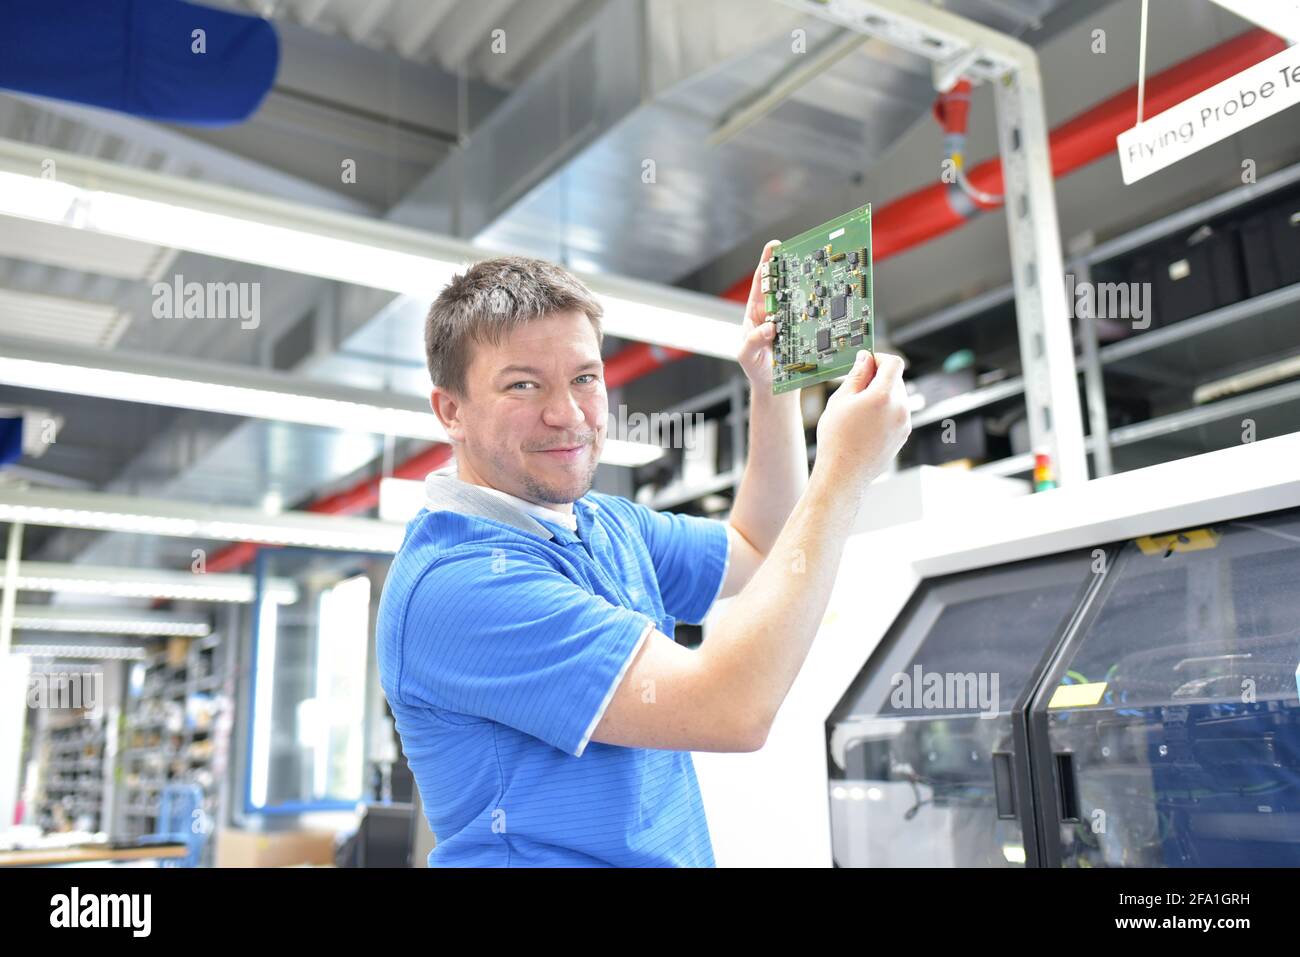 Porträt eines Arbeitnehmers in der technischen Abteilung einer Fabrik für die Produktion und den Bau der Elektronik Stockfoto